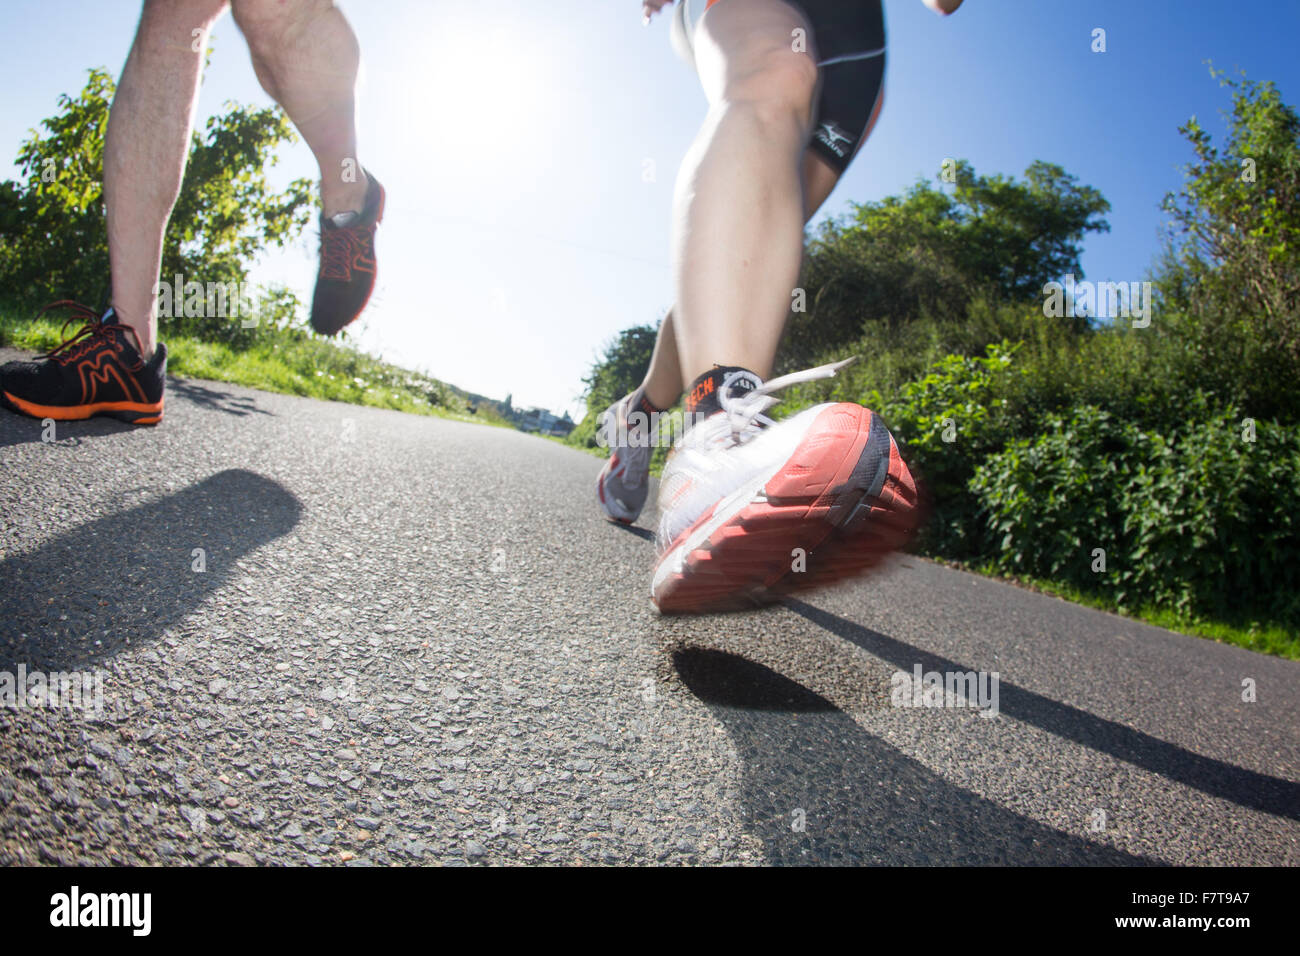 Beine, jogging Schuhe, Jogger auf Asphalt Weg, Deutschland Stockfotografie  - Alamy